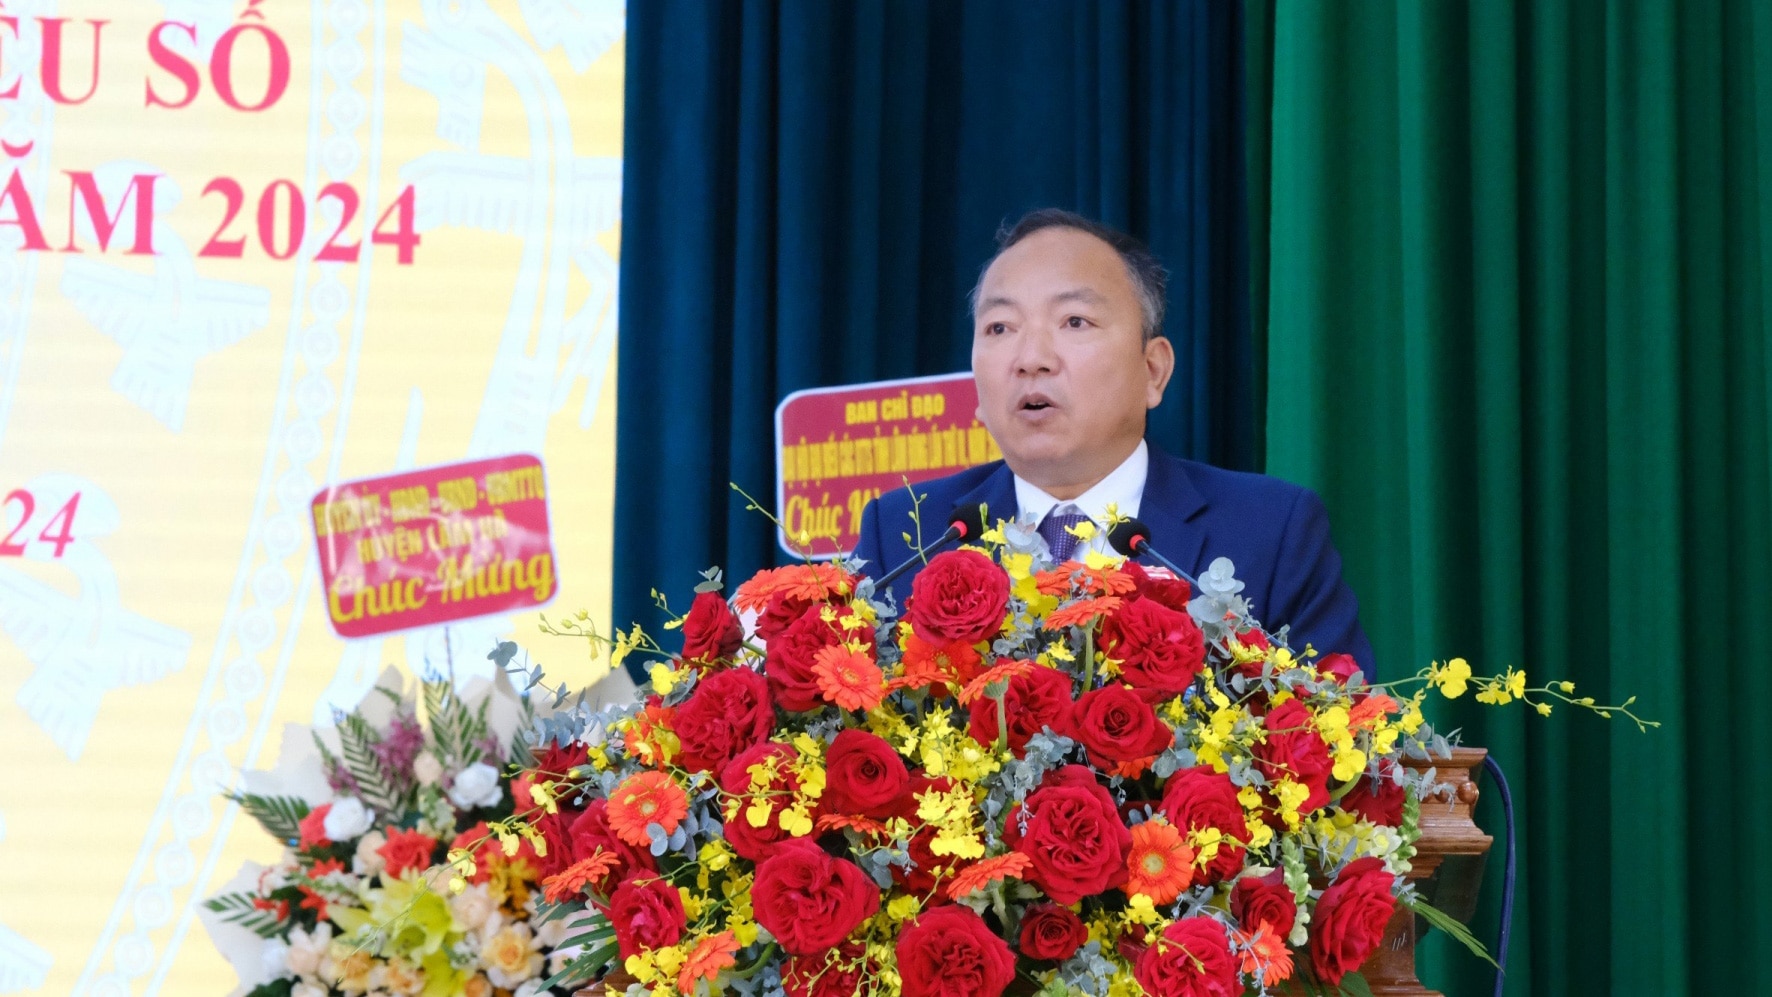 Đồng chí Đinh Đức Chí - Phó Chủ tịch UBND huyện Lâm Hà phát biểu khai mạc Đại hội